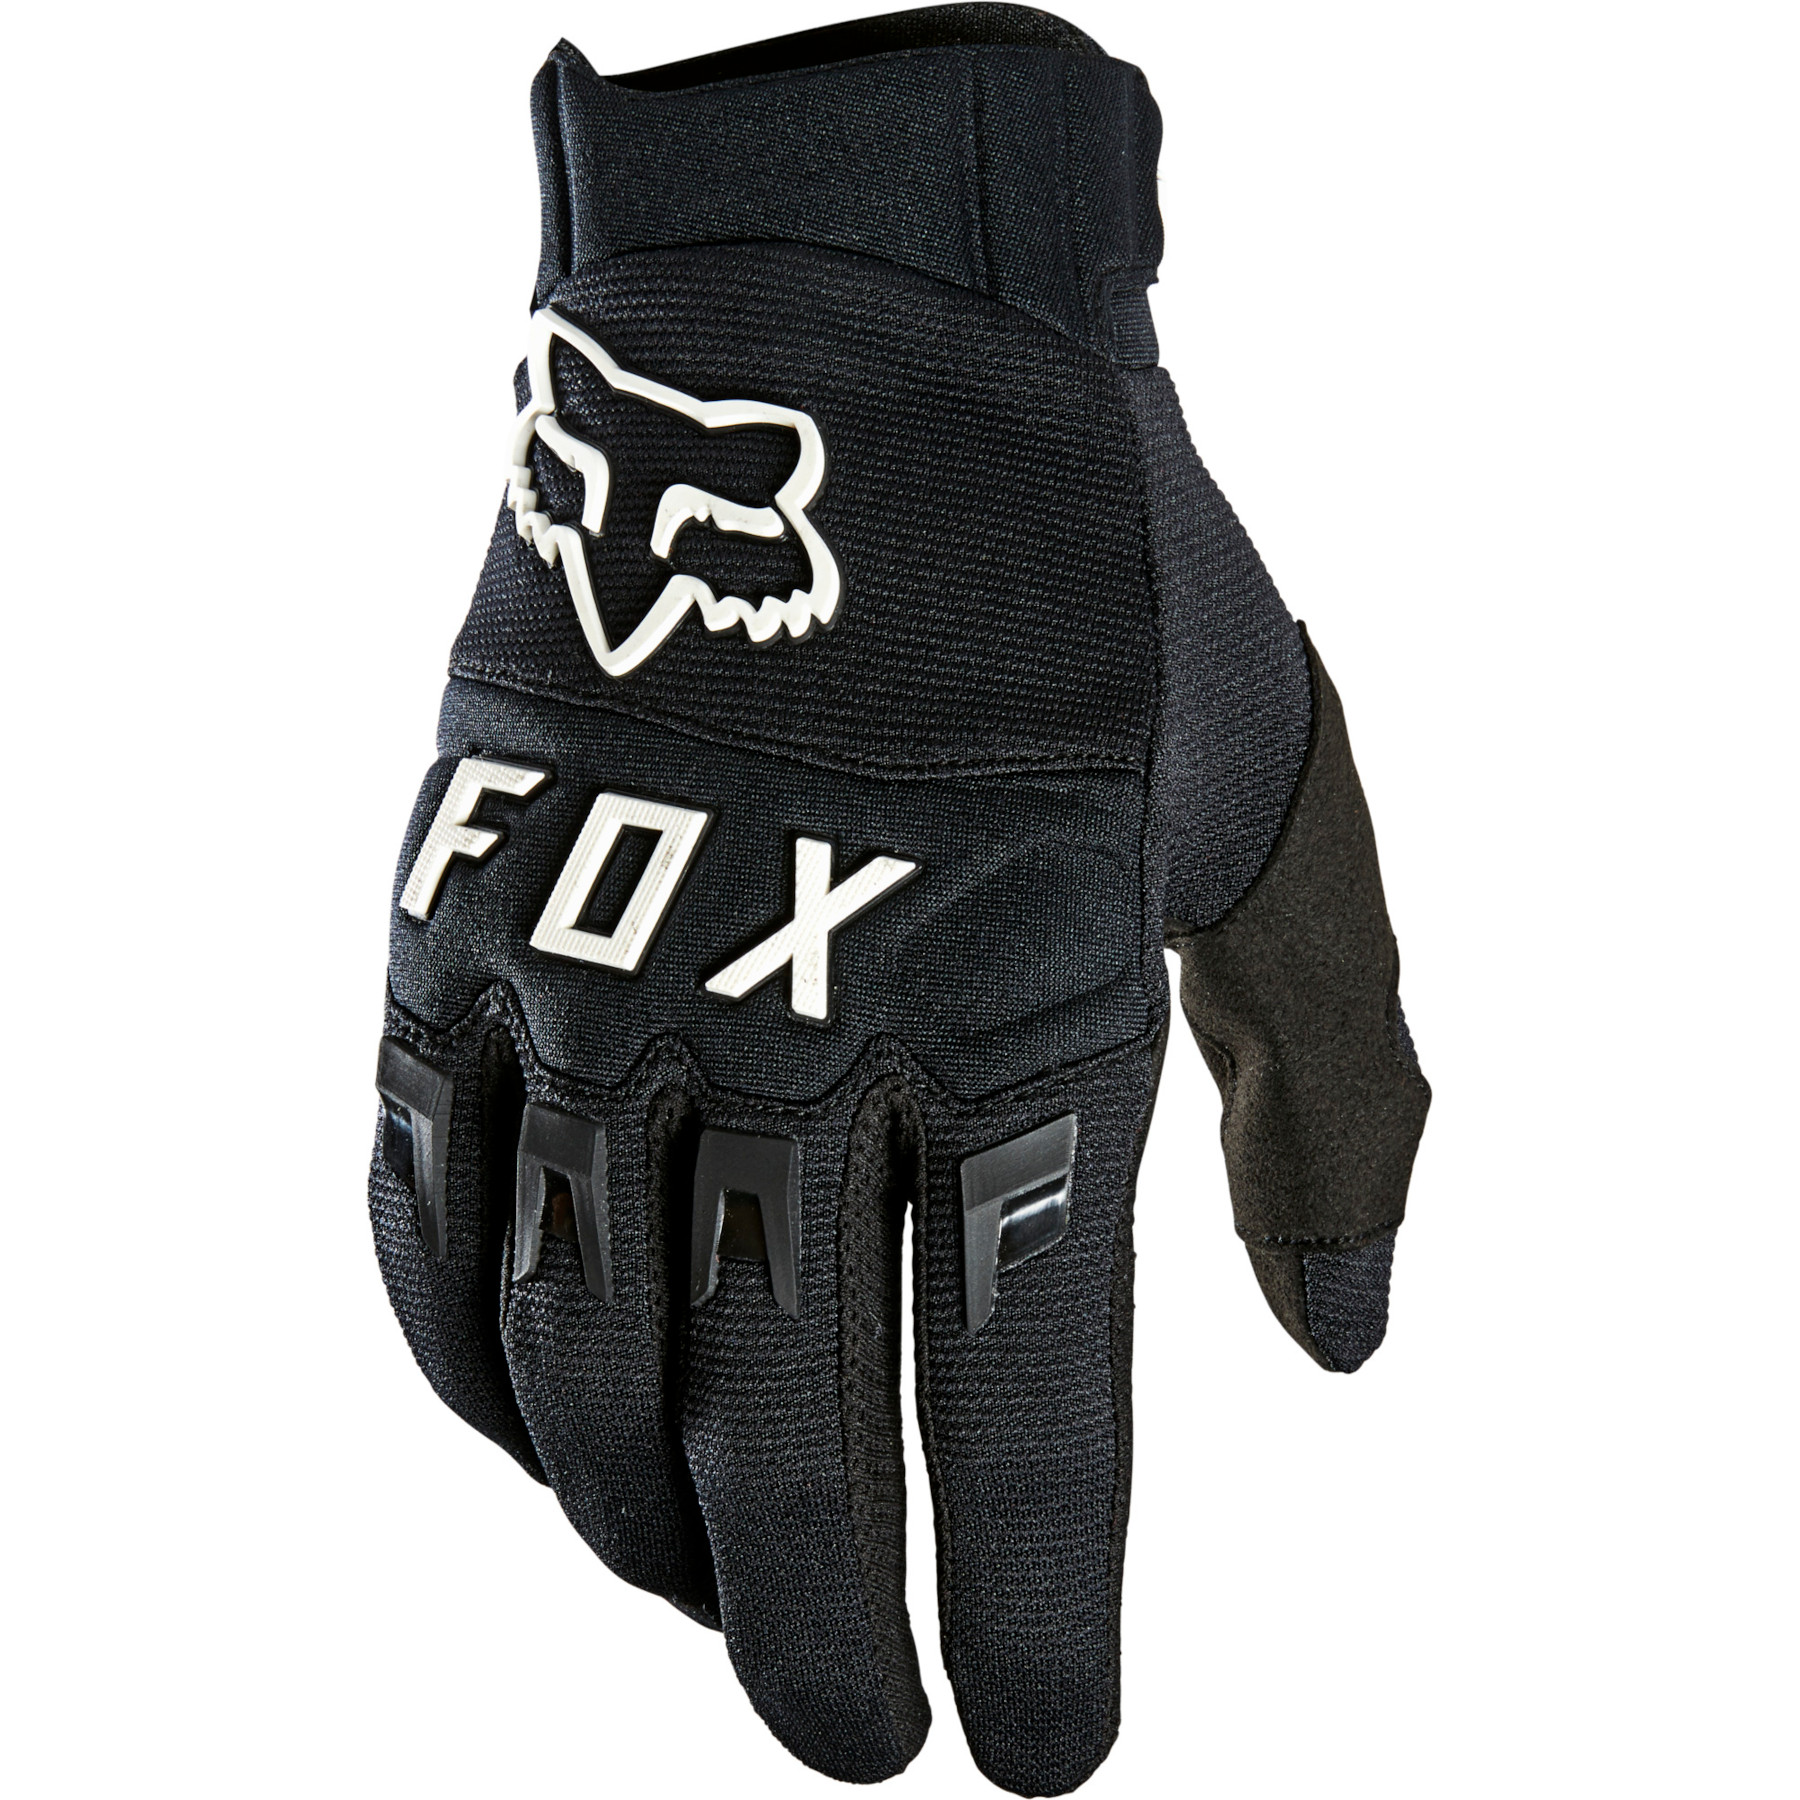 Produktbild von FOX Dirtpaw MTB Vollfinger Handschuh - black/white